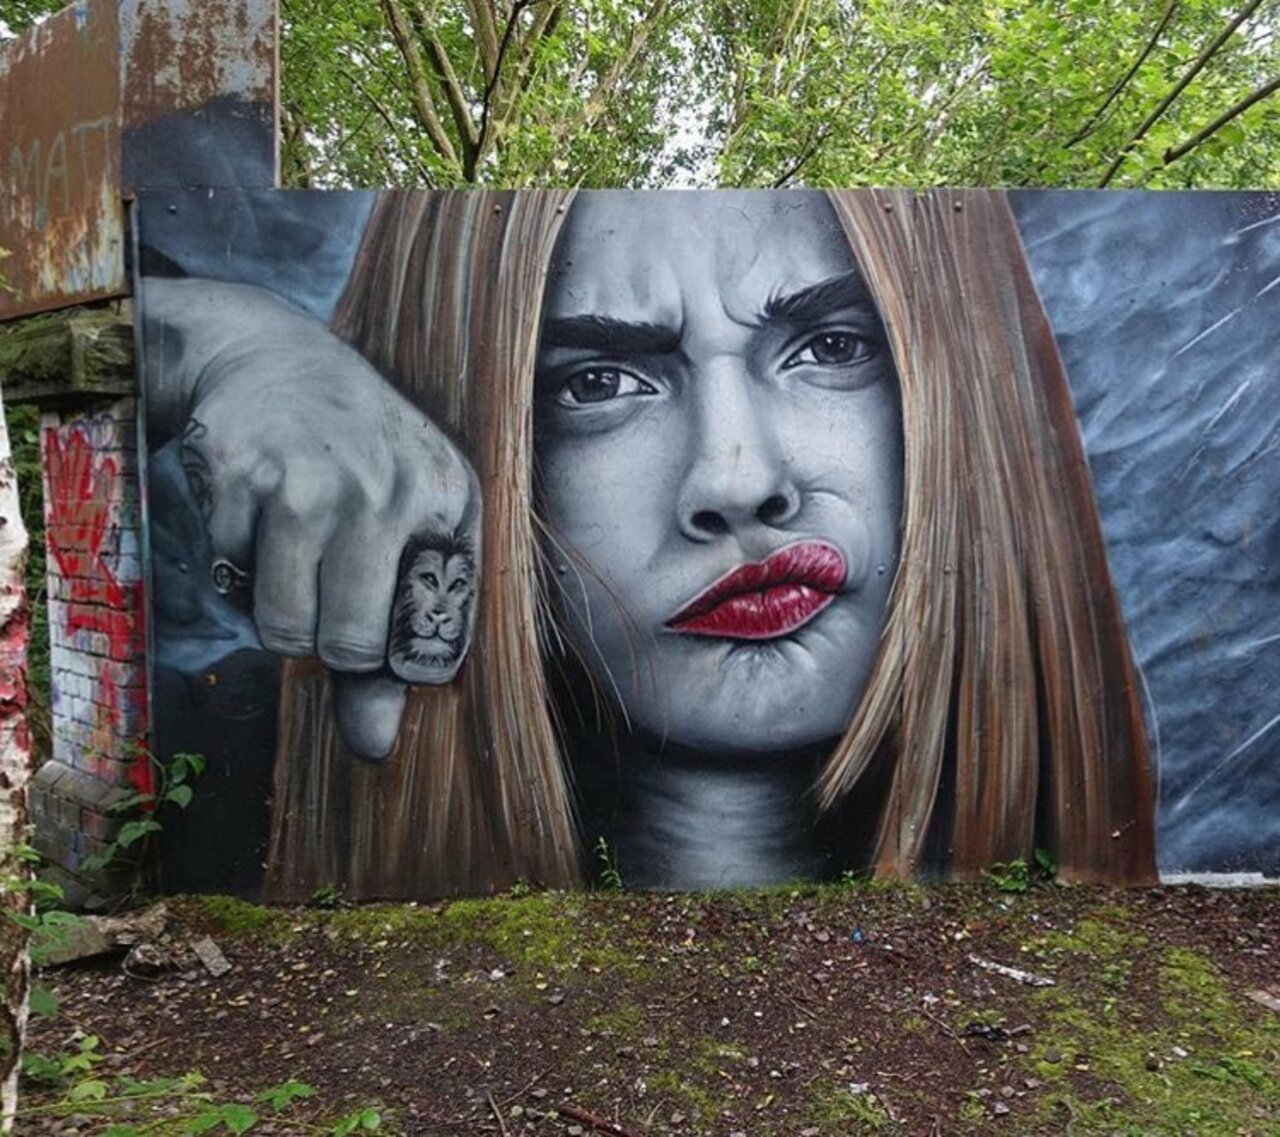 Street Art by PawSk1 in Sheffield UK #art #mural #graffiti #streetart https://t.co/kRzdFkBbRW